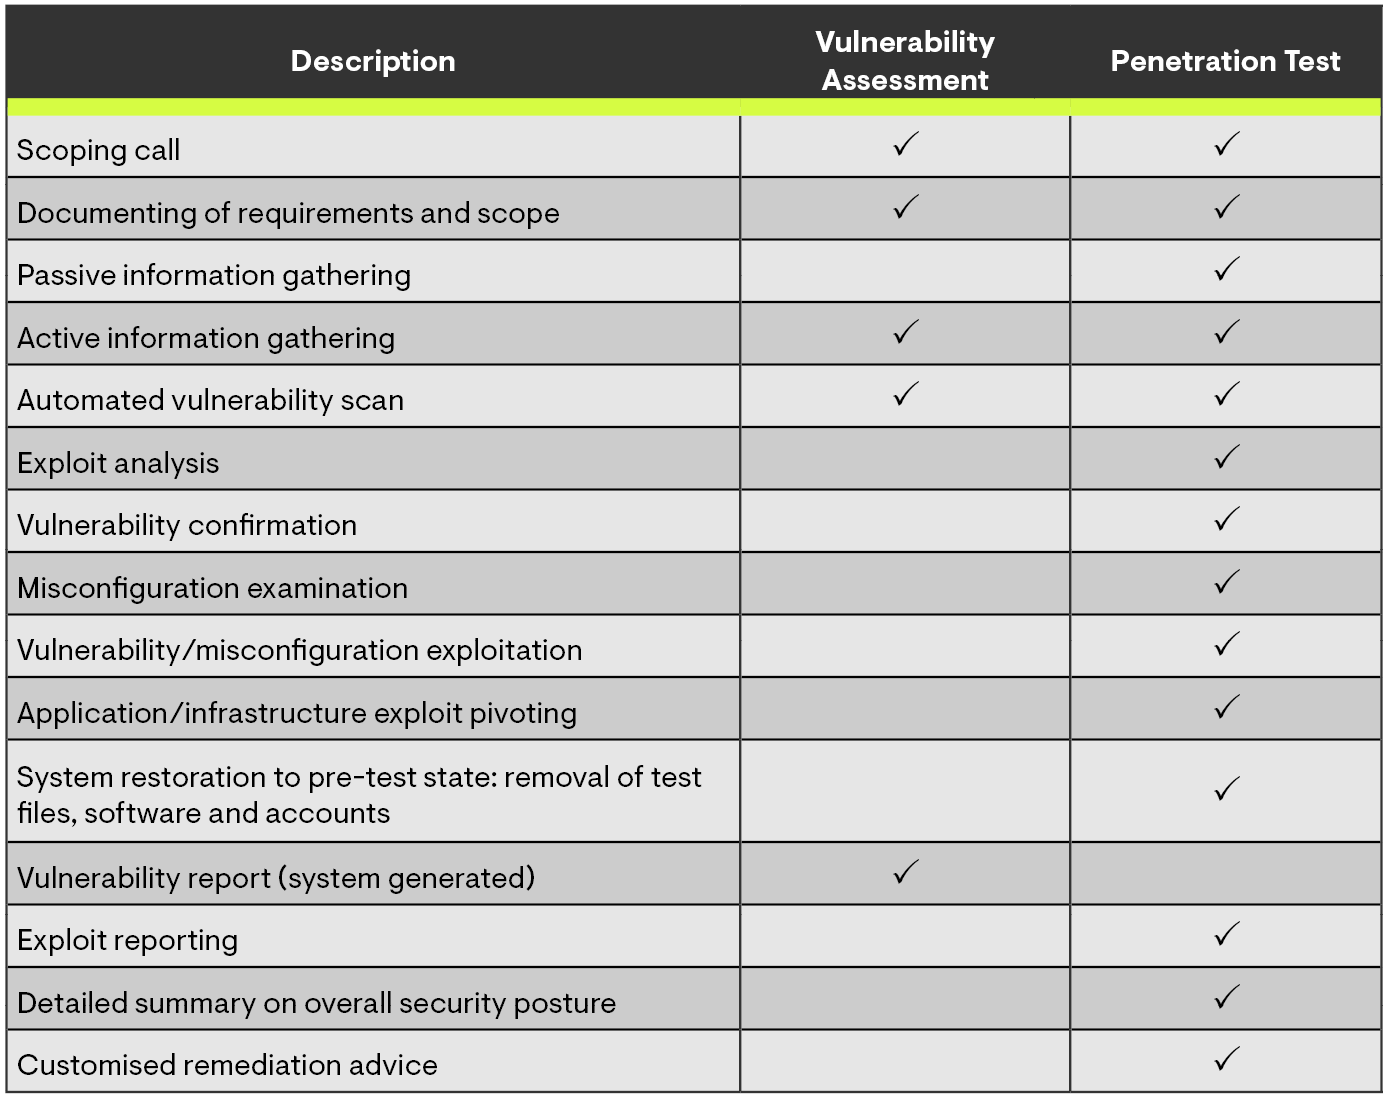 Penetration Test vs. Vulnerability Assessment